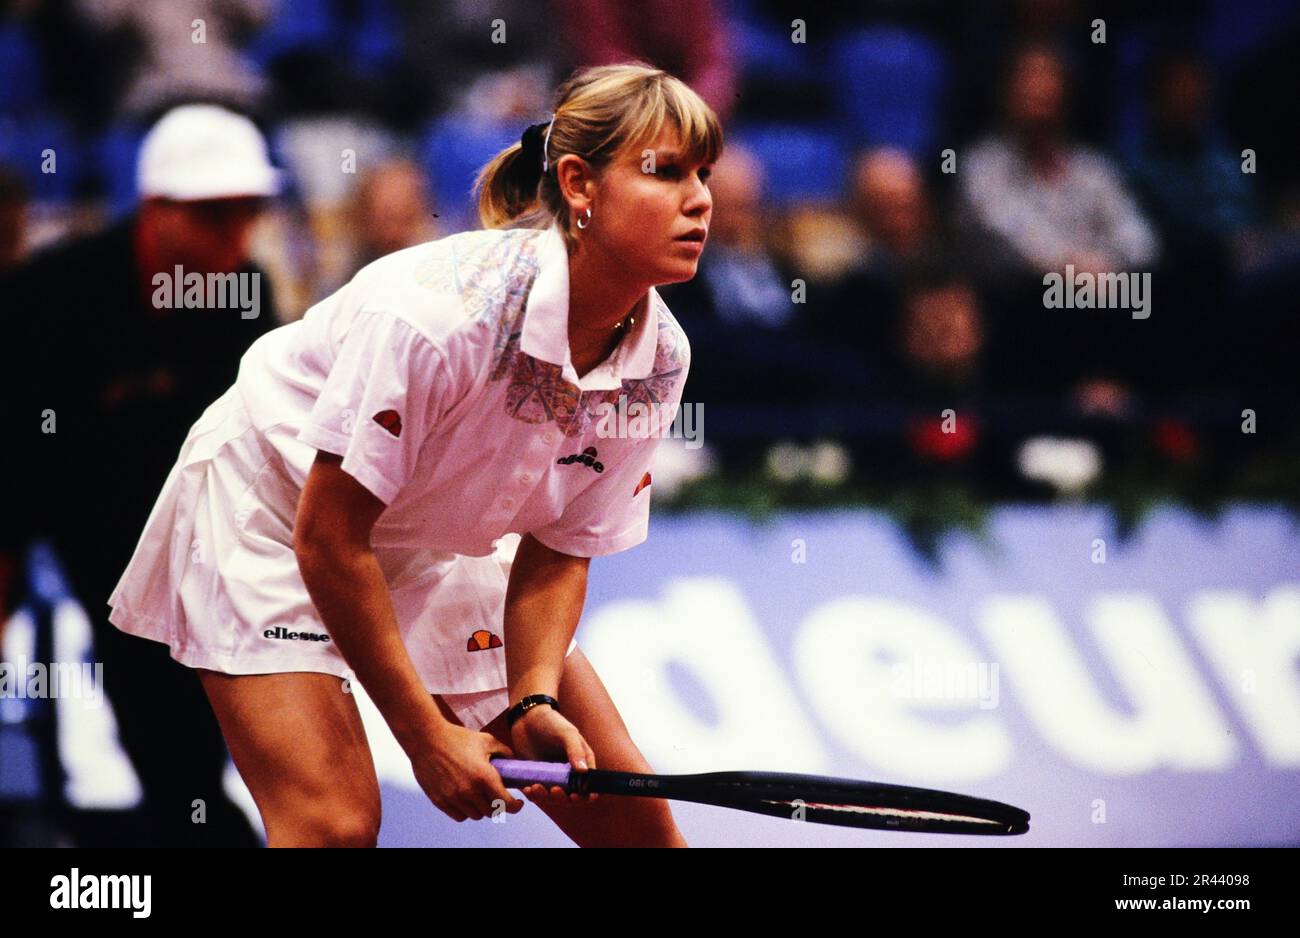 Anke Huber, deutsche Tennisspielerin, auf dem Tennisplatz in Aktion. Stockfoto